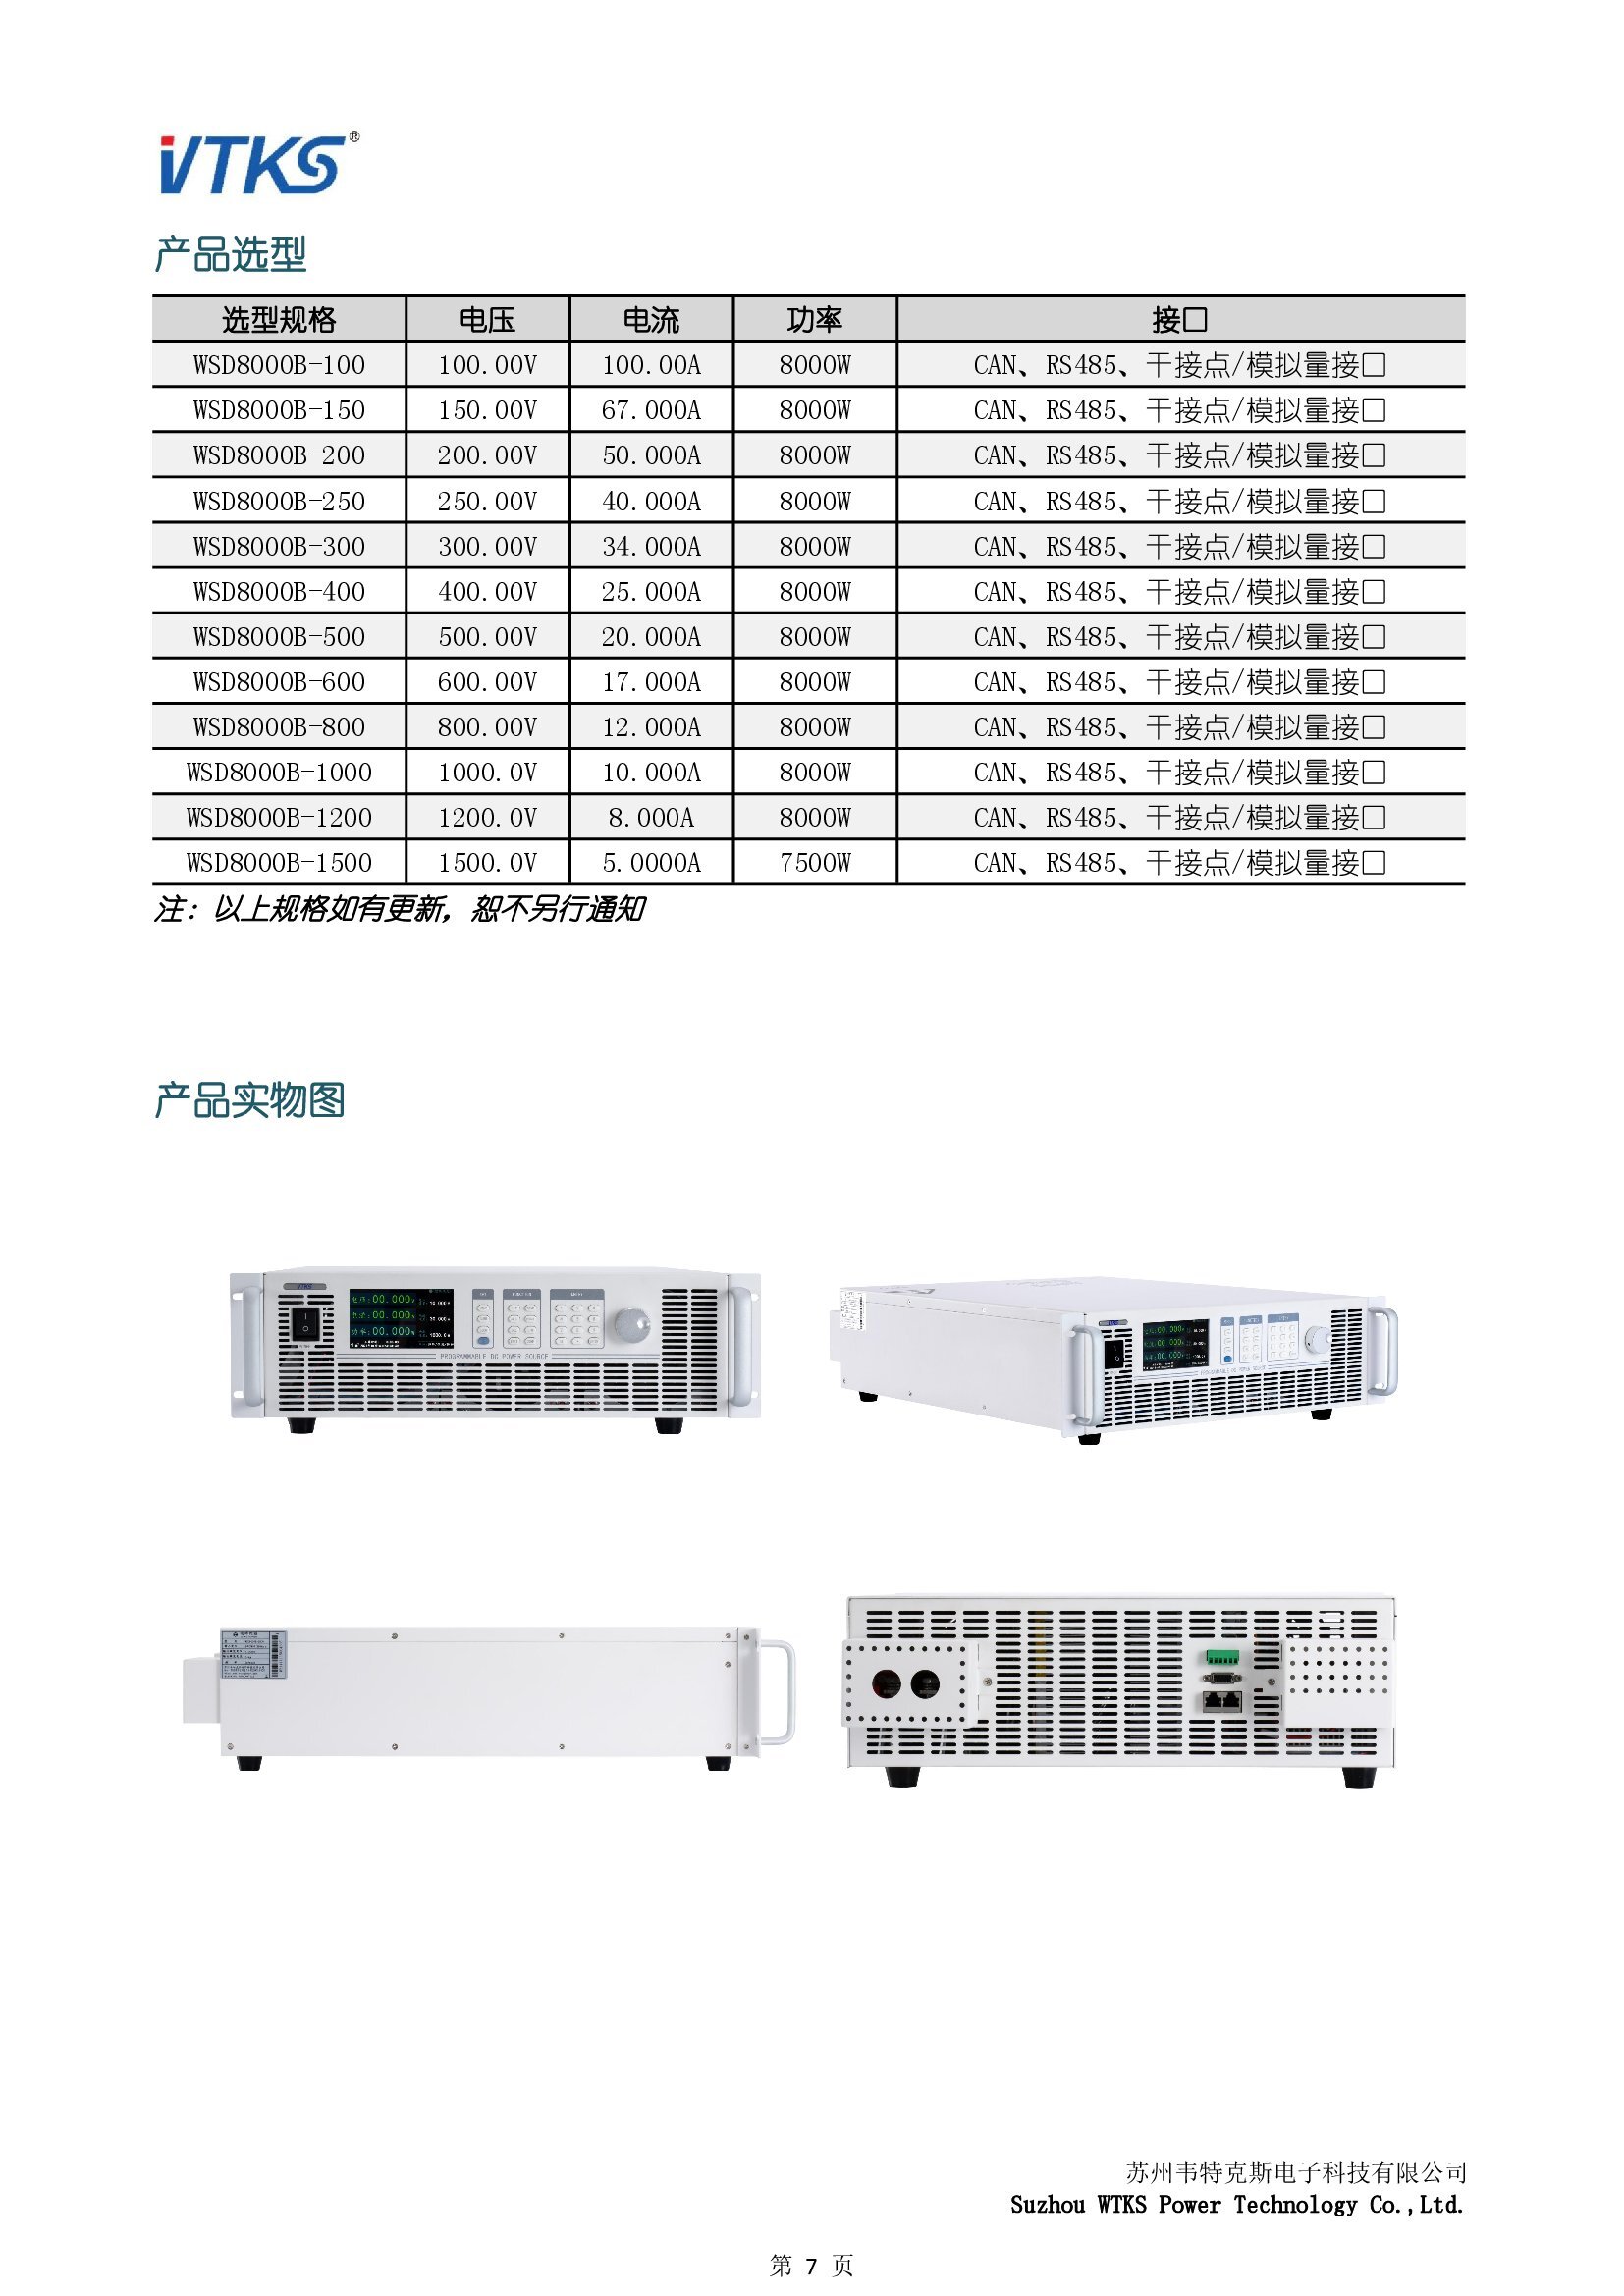 WSD8000B系列宽范围可编程直流电源技术资料_V1.14_00007.jpg